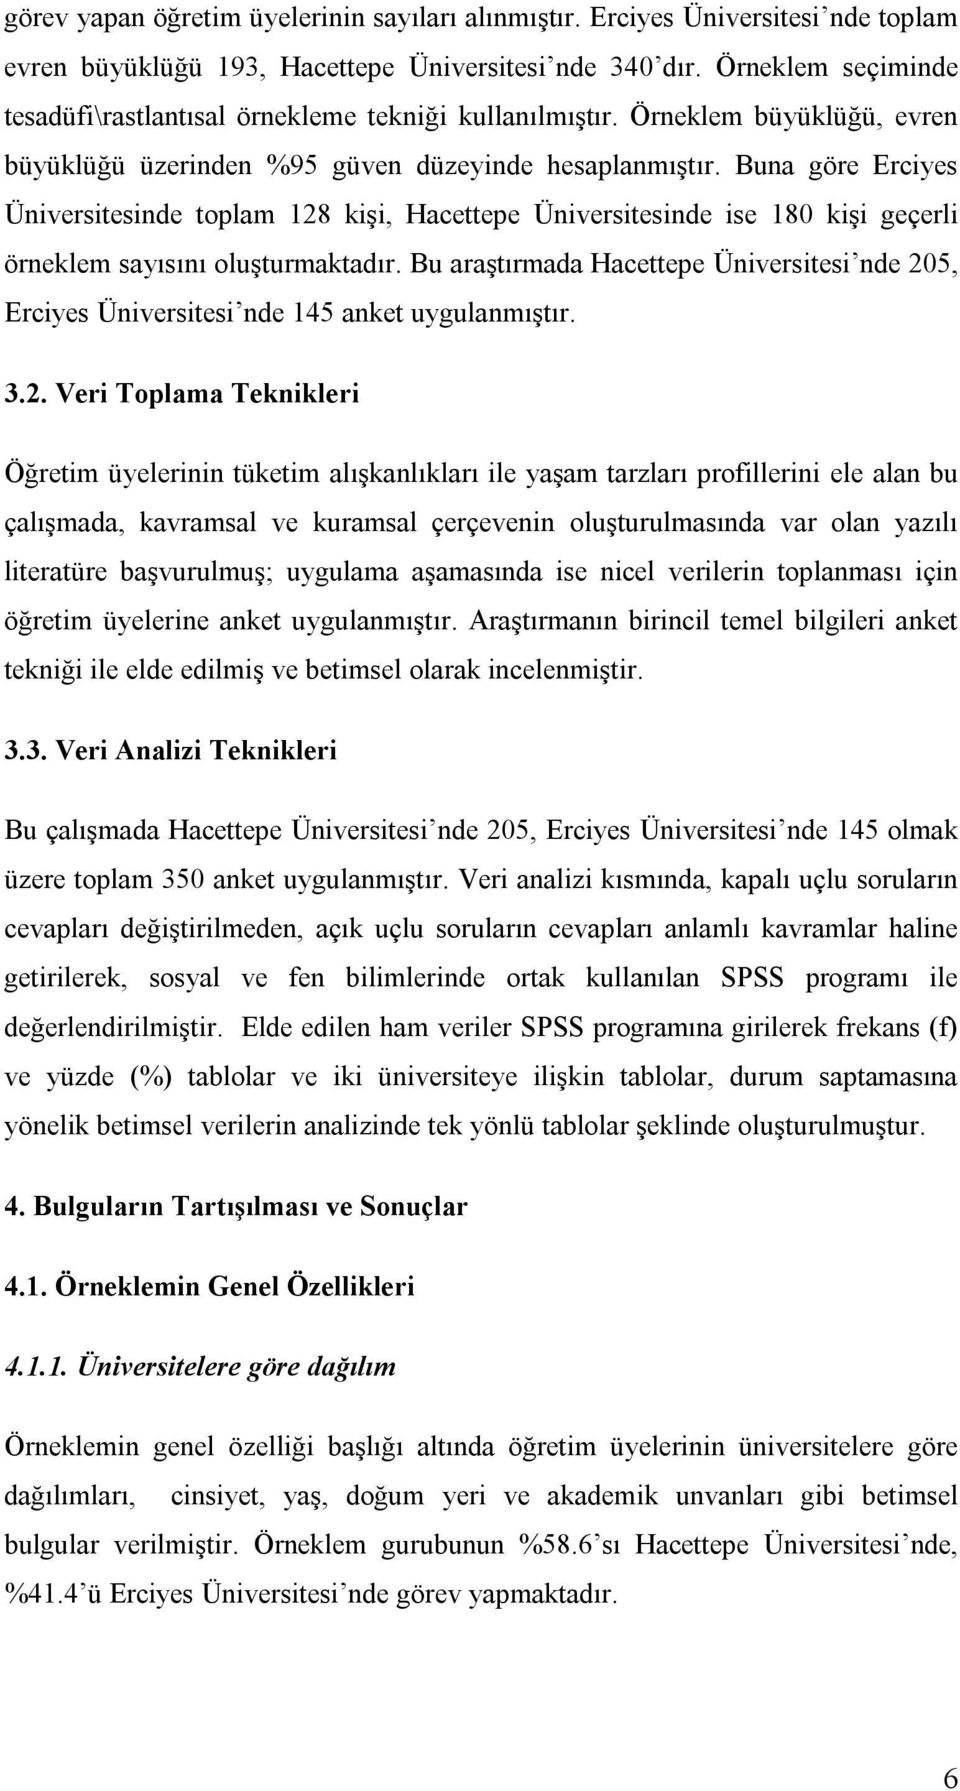 Buna göre Erciyes Üniversitesinde toplam 128 kişi, Hacettepe Üniversitesinde ise 180 kişi geçerli örneklem sayısını oluşturmaktadır.